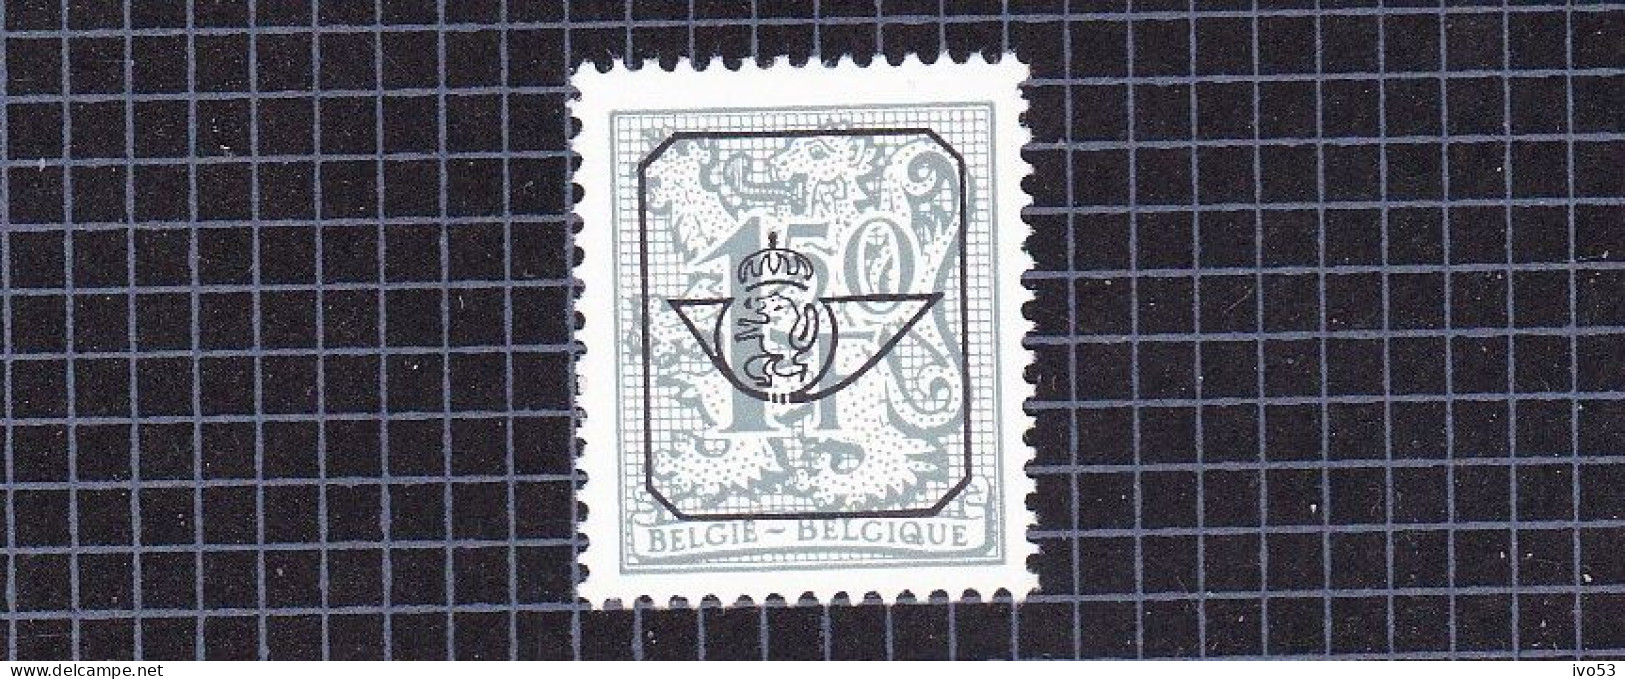 1980 Nr PRE801P4 ** Postfris,Heraldieke Leeuw.1,5fr. - Typos 1951-80 (Ziffer Auf Löwe)